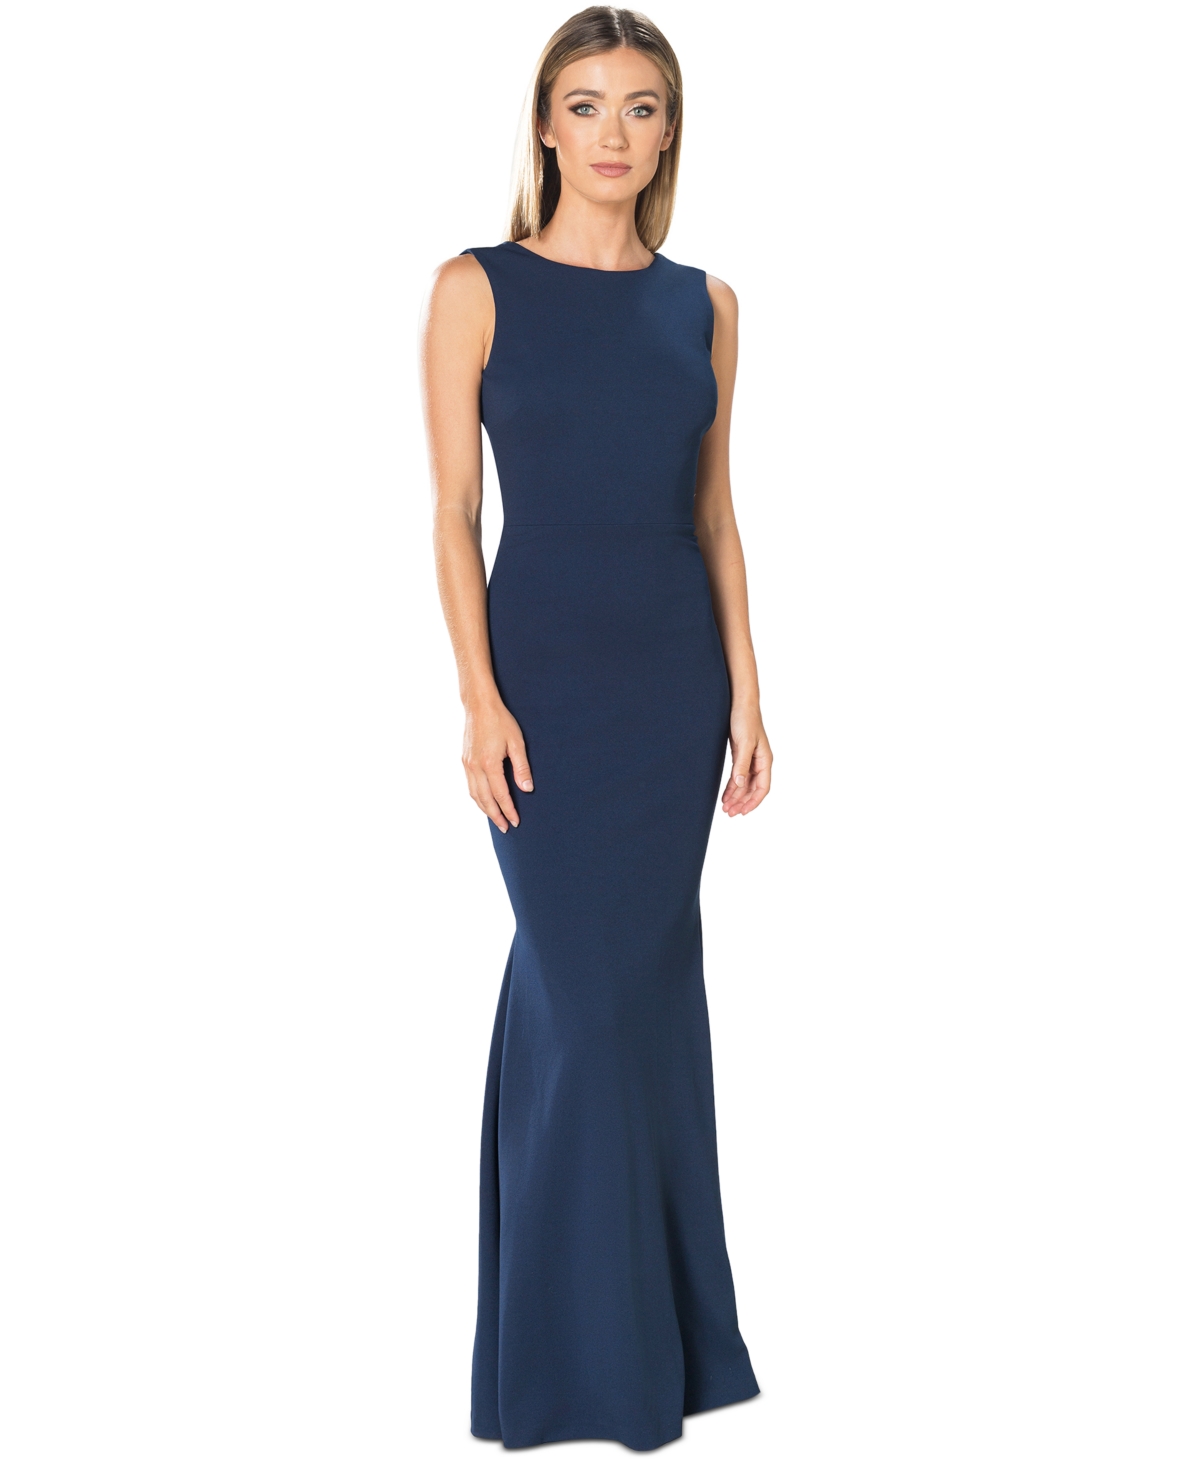 Women's Leighton V-Back Gown - Peacock Blue